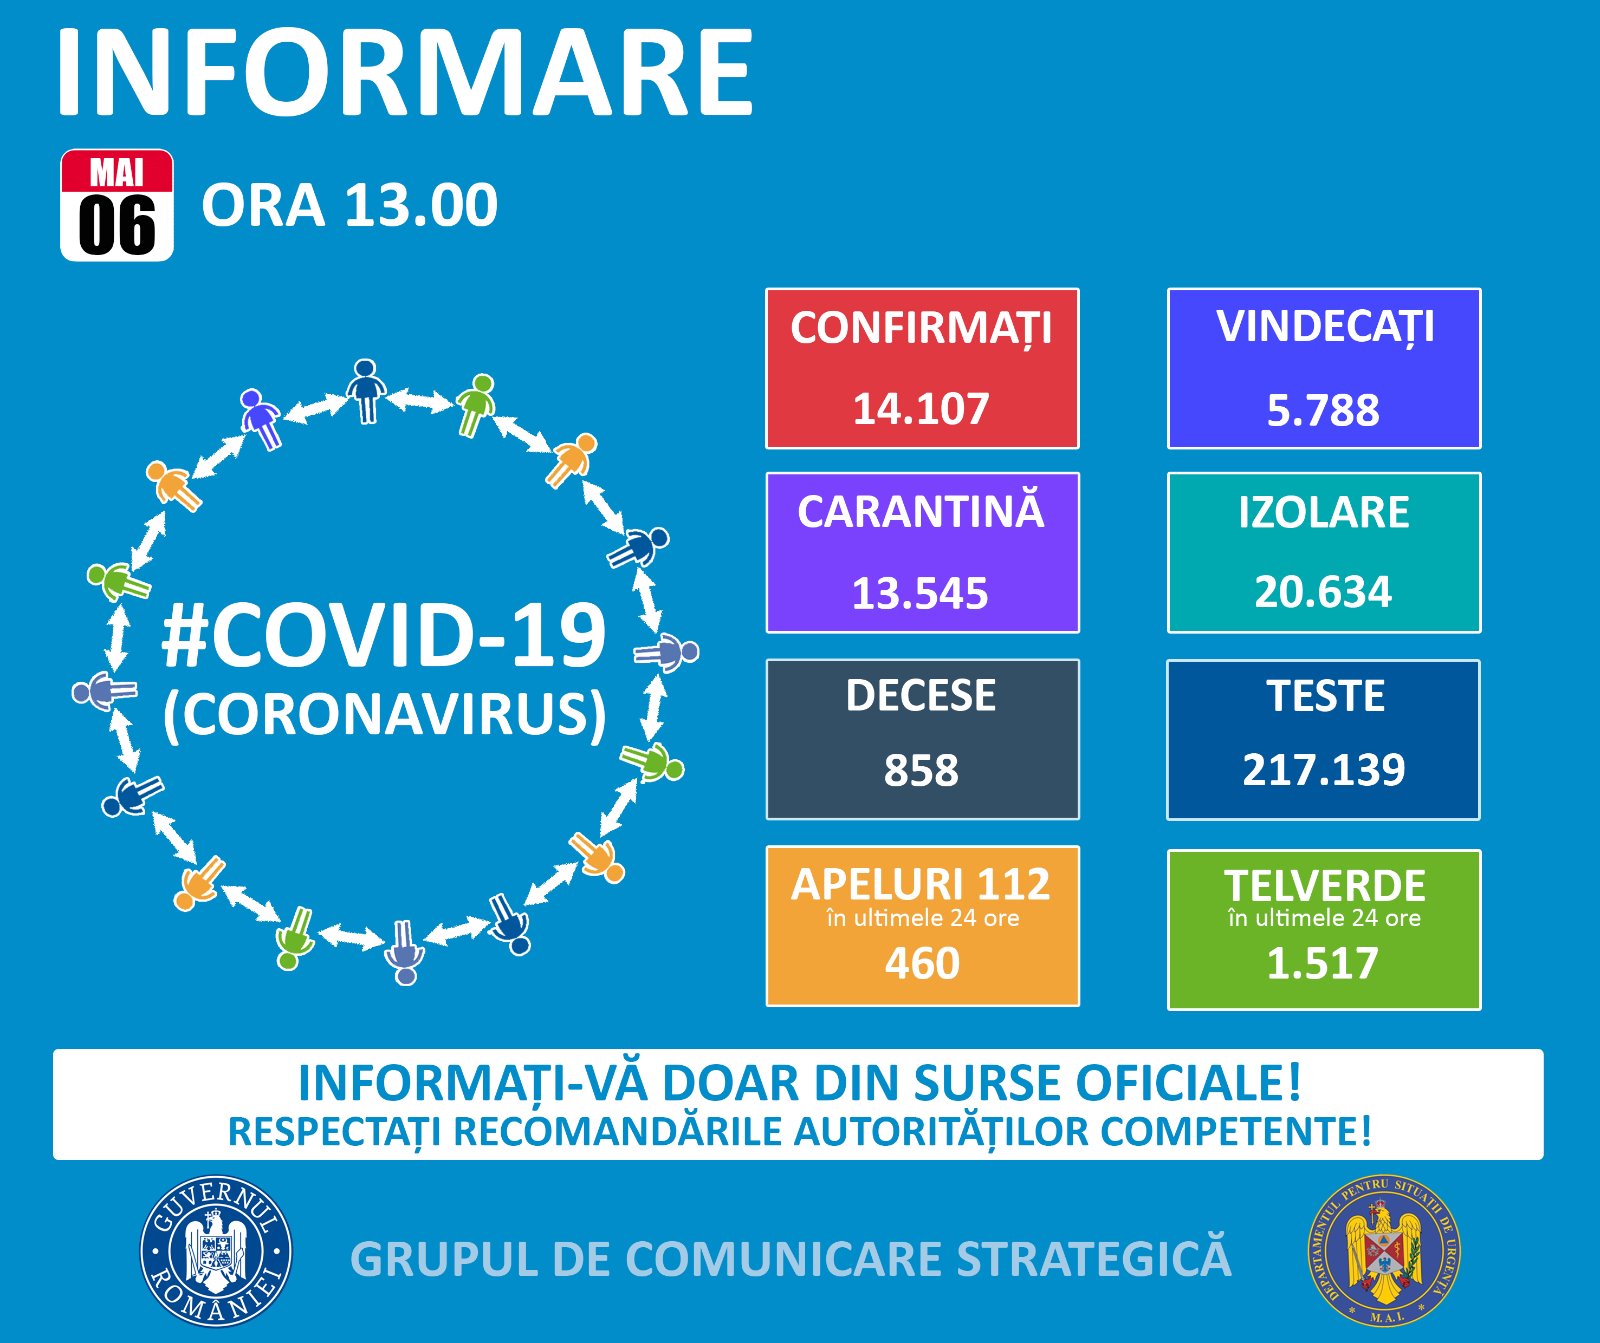 Situazione COVID-19 in Romania, 6 maggio